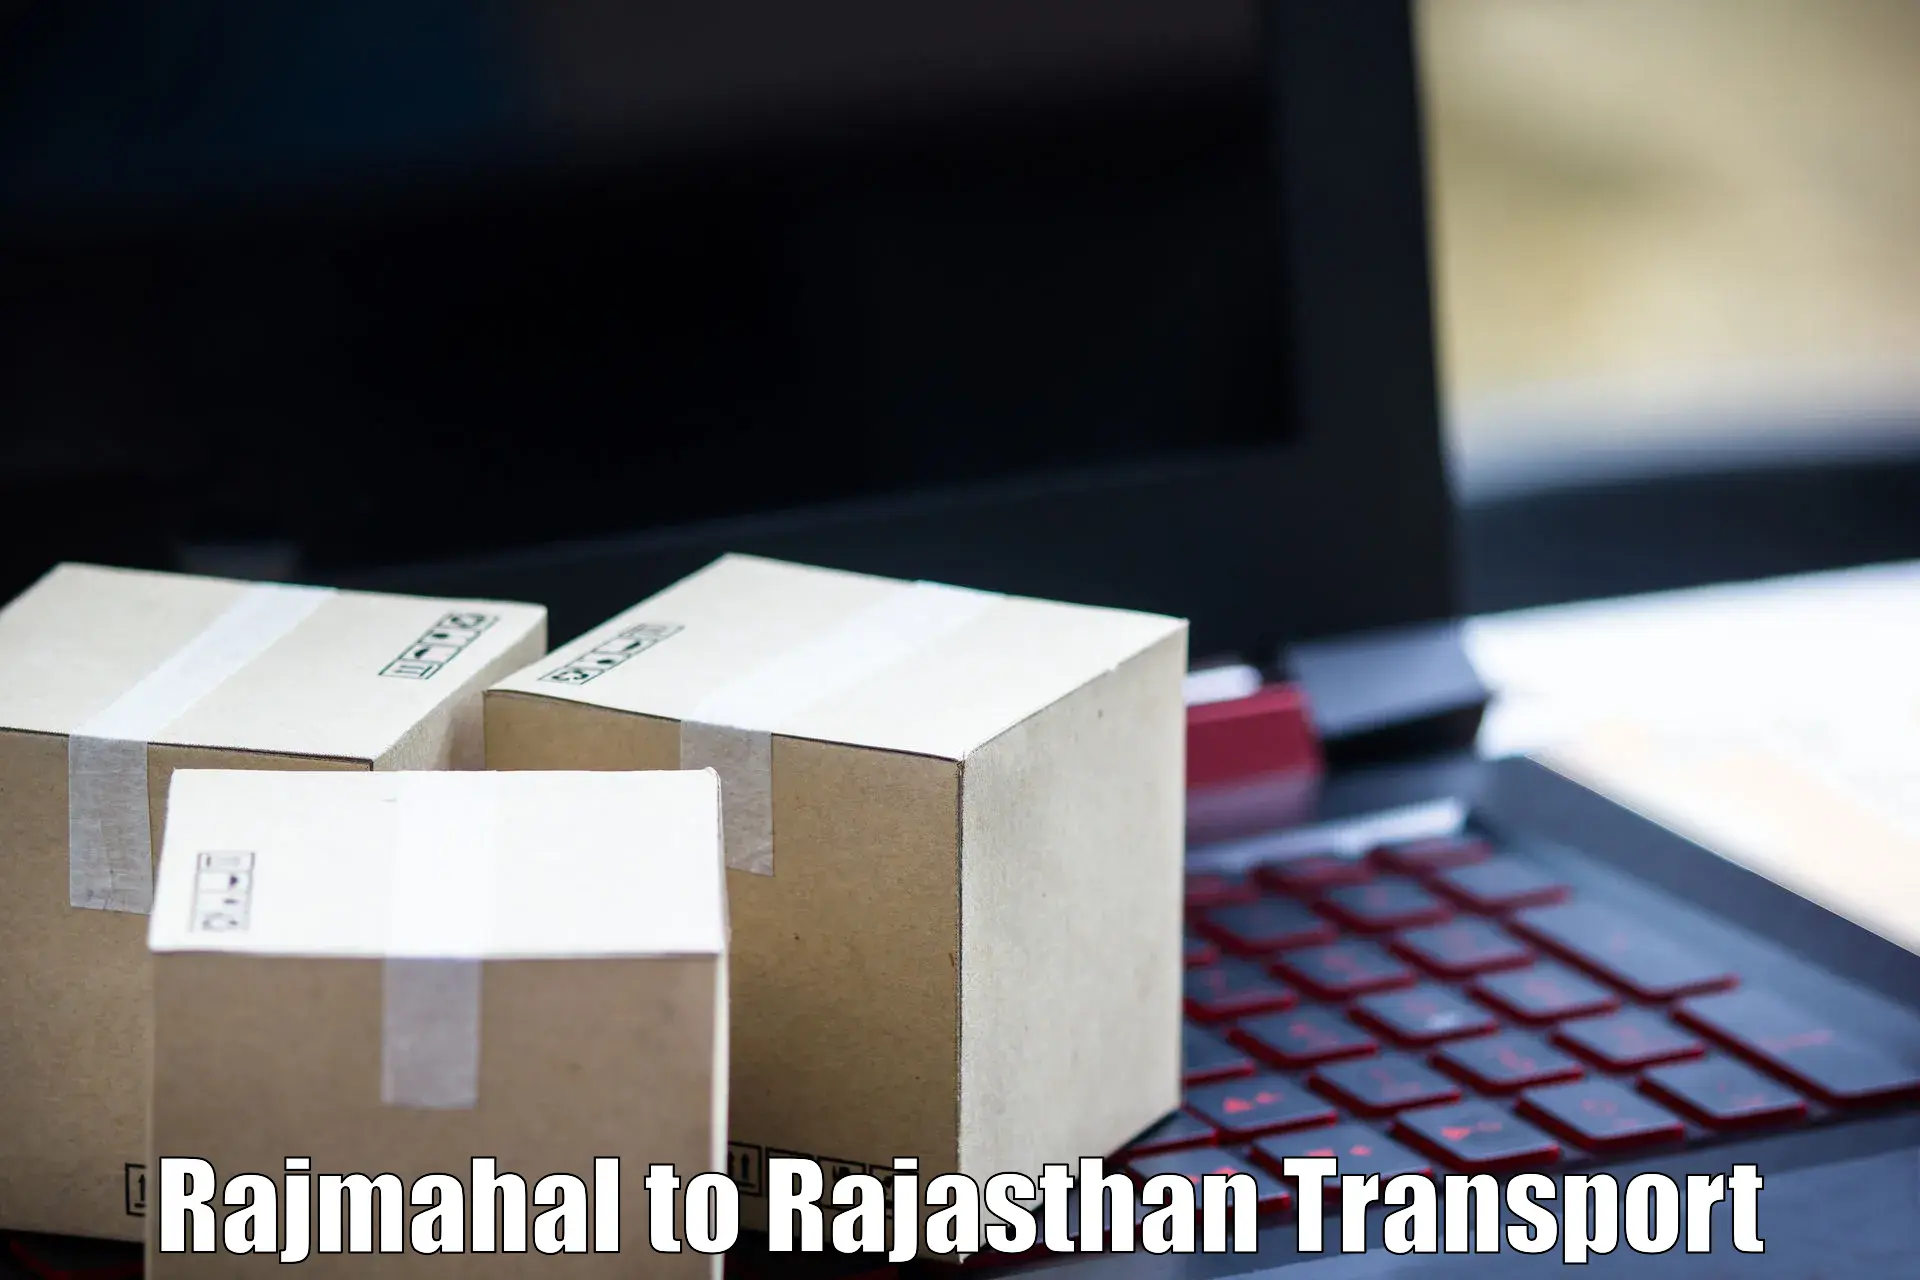 Nearest transport service Rajmahal to Jhunjhunu